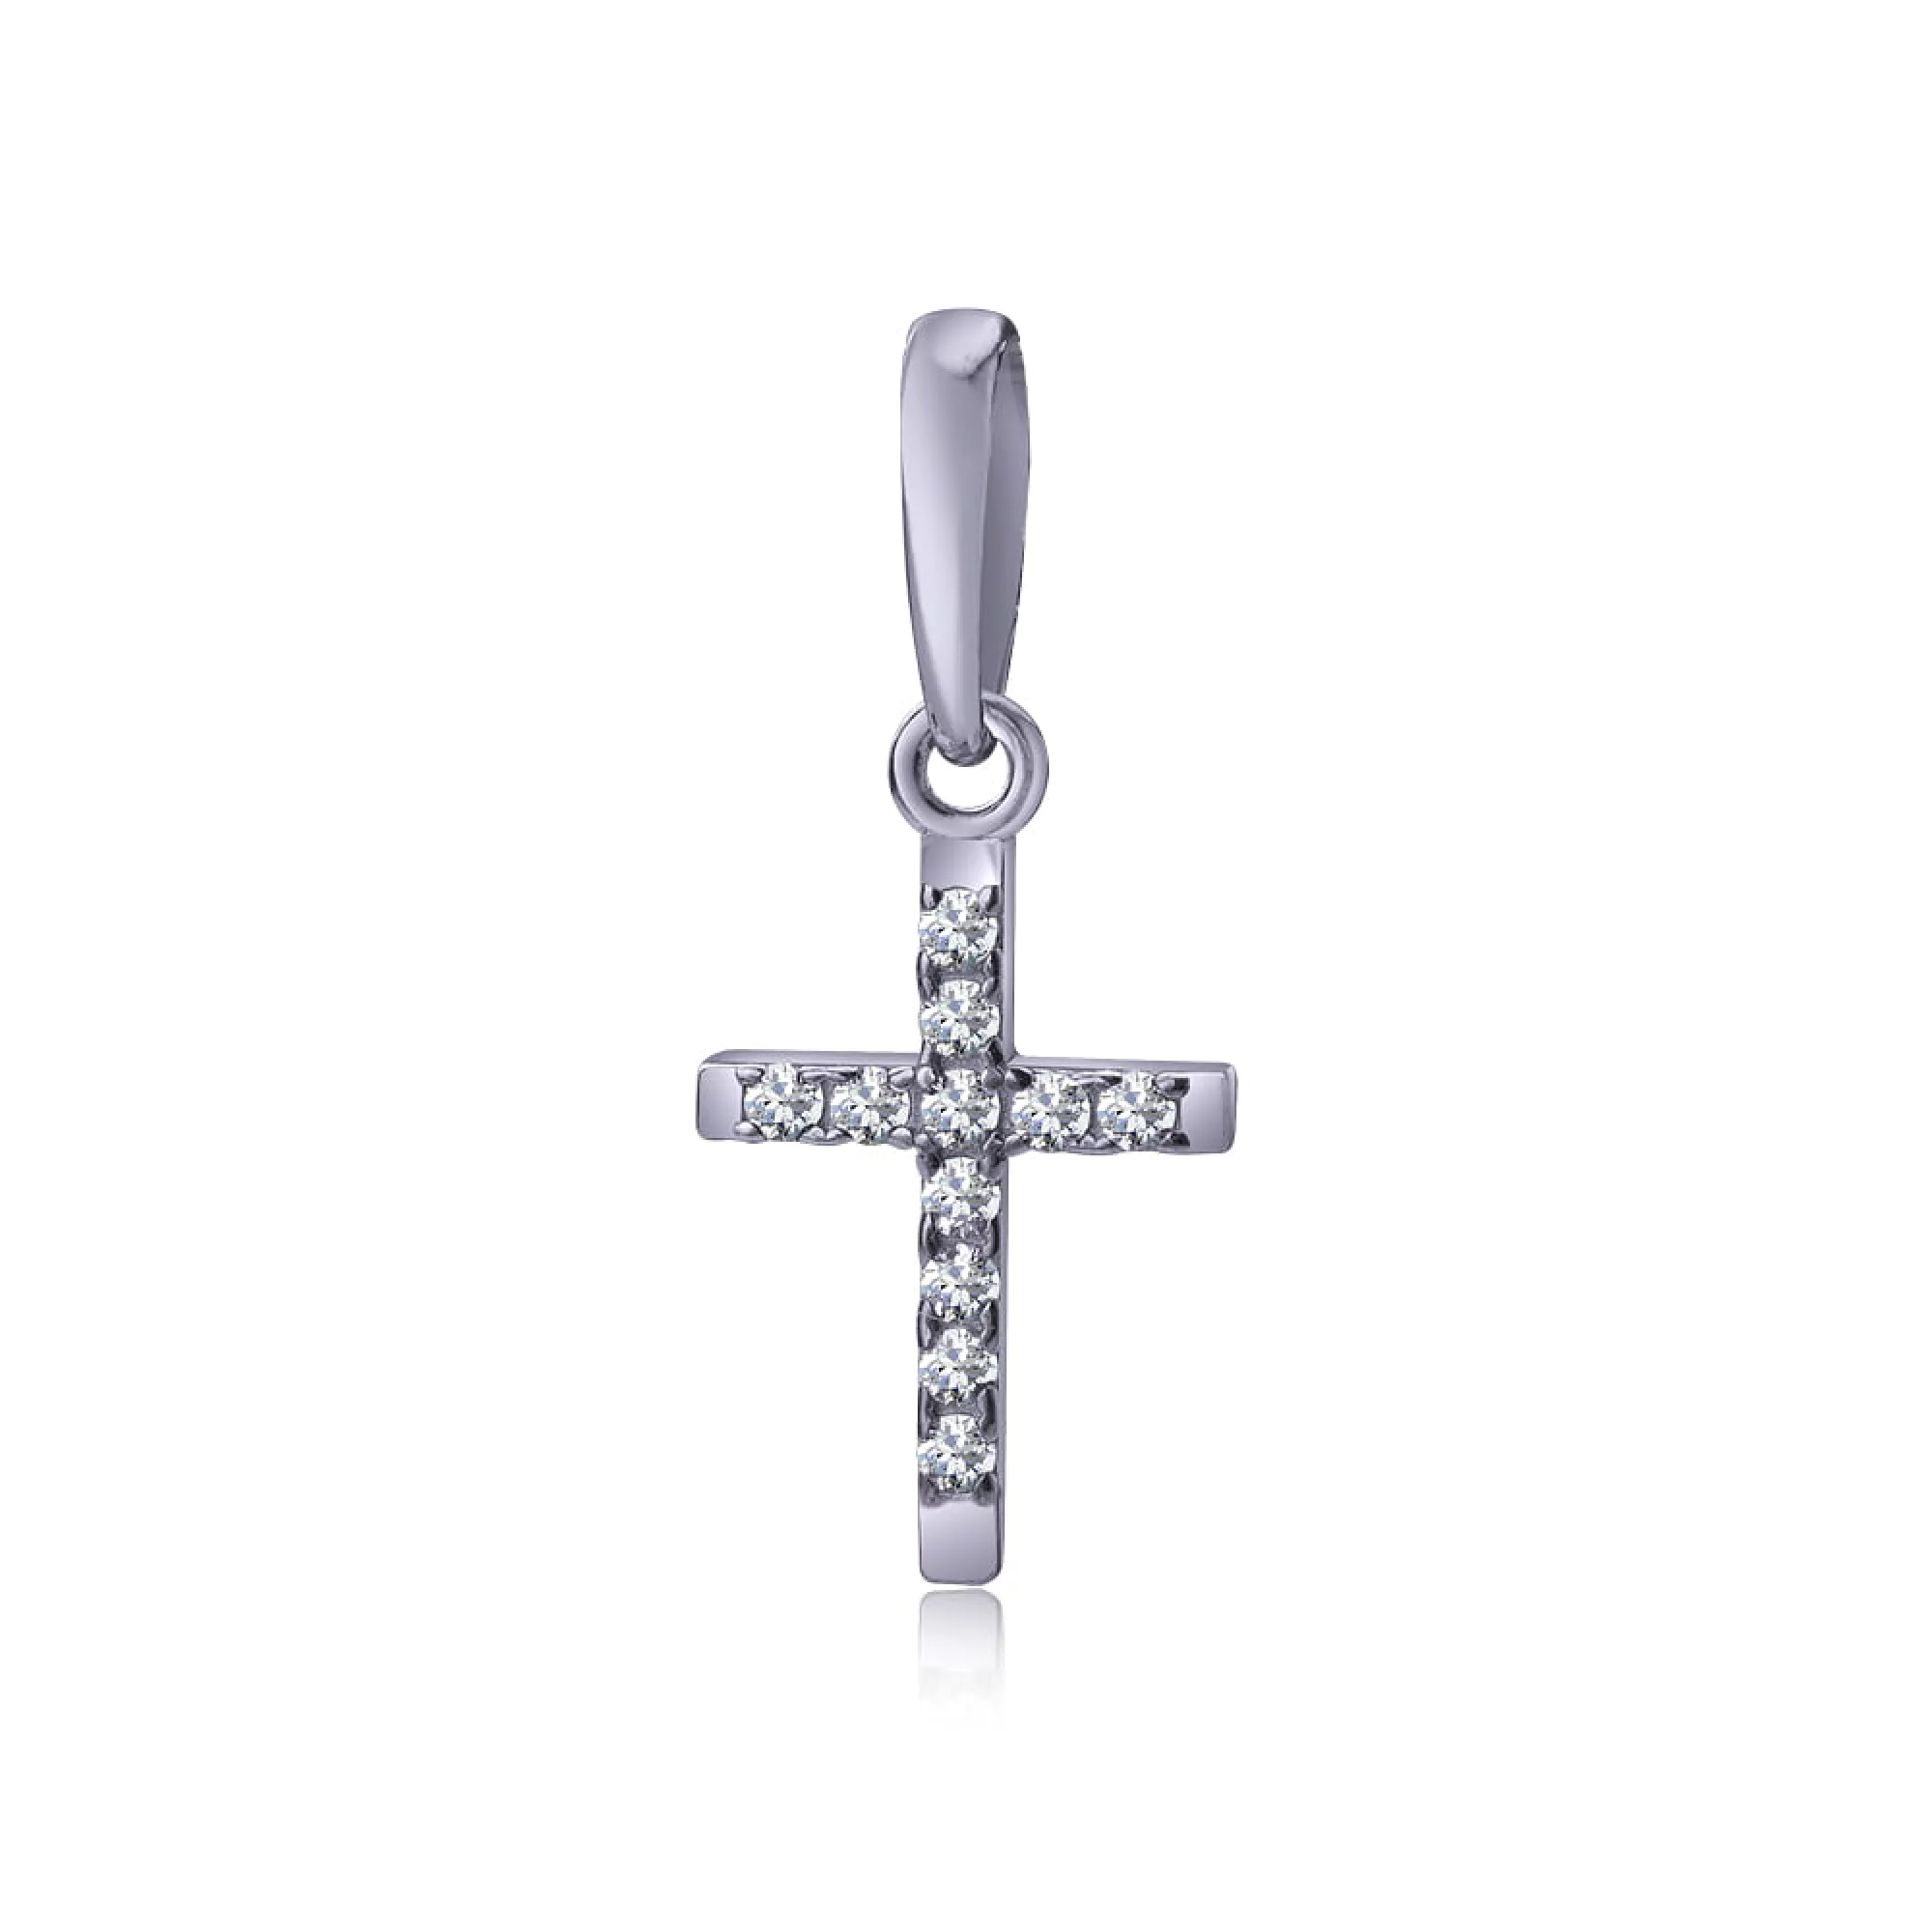 Срібний хрестик з цирконієм - 416558 – зображення 1